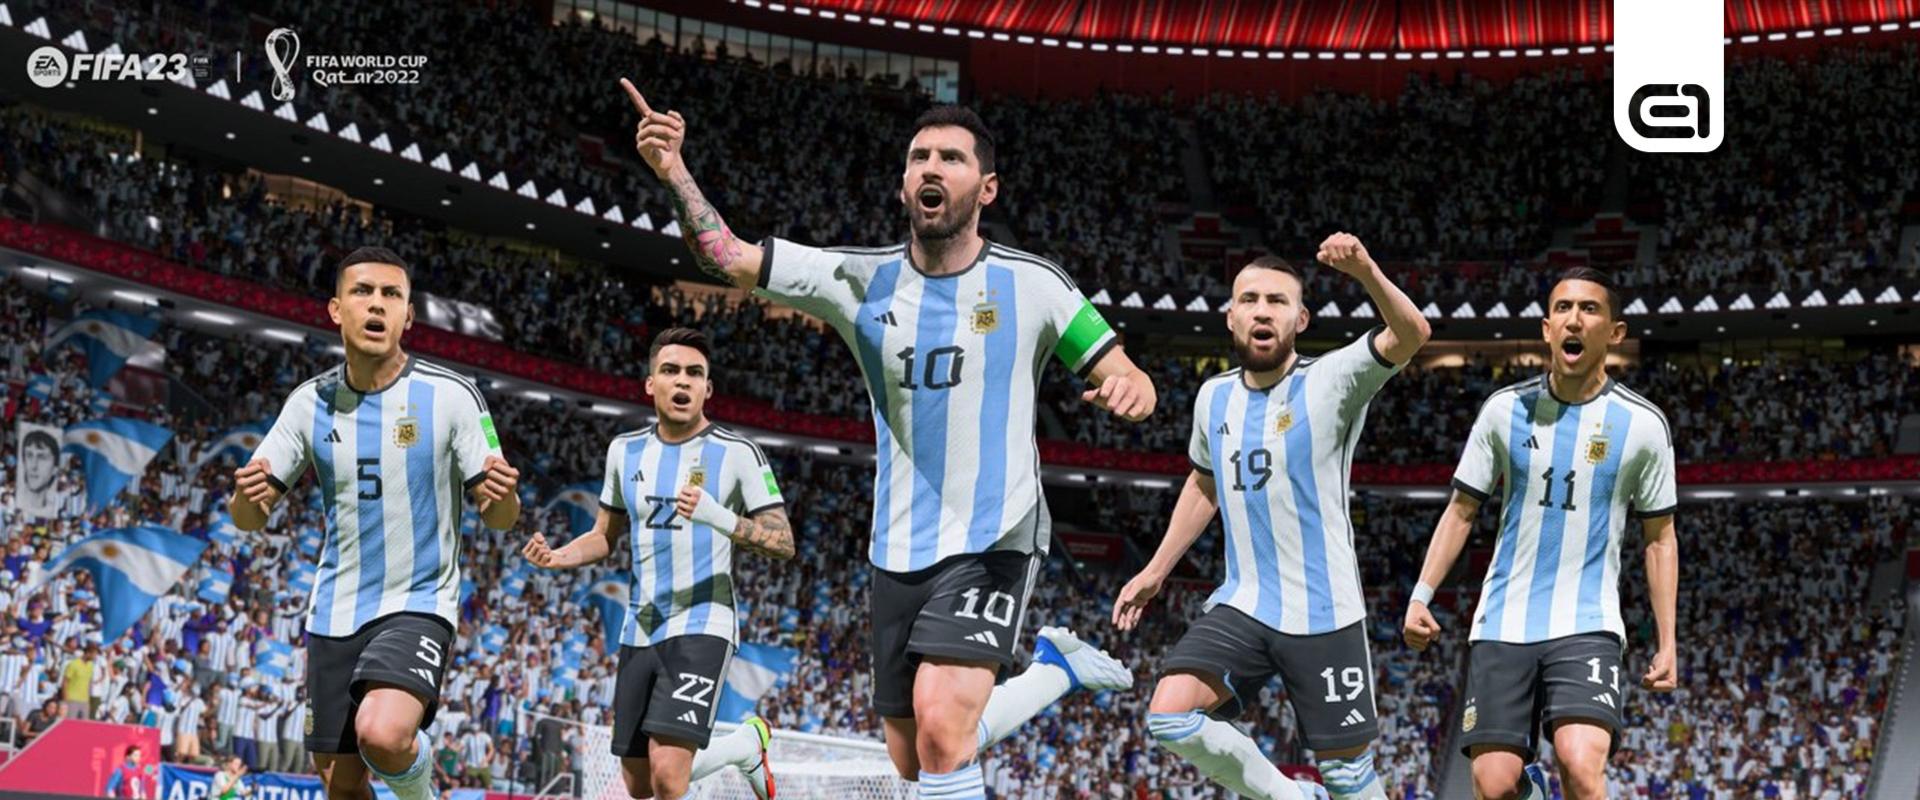 FIFA 23: Kinek volt igaza a vb végeredményével kapcsolatban?